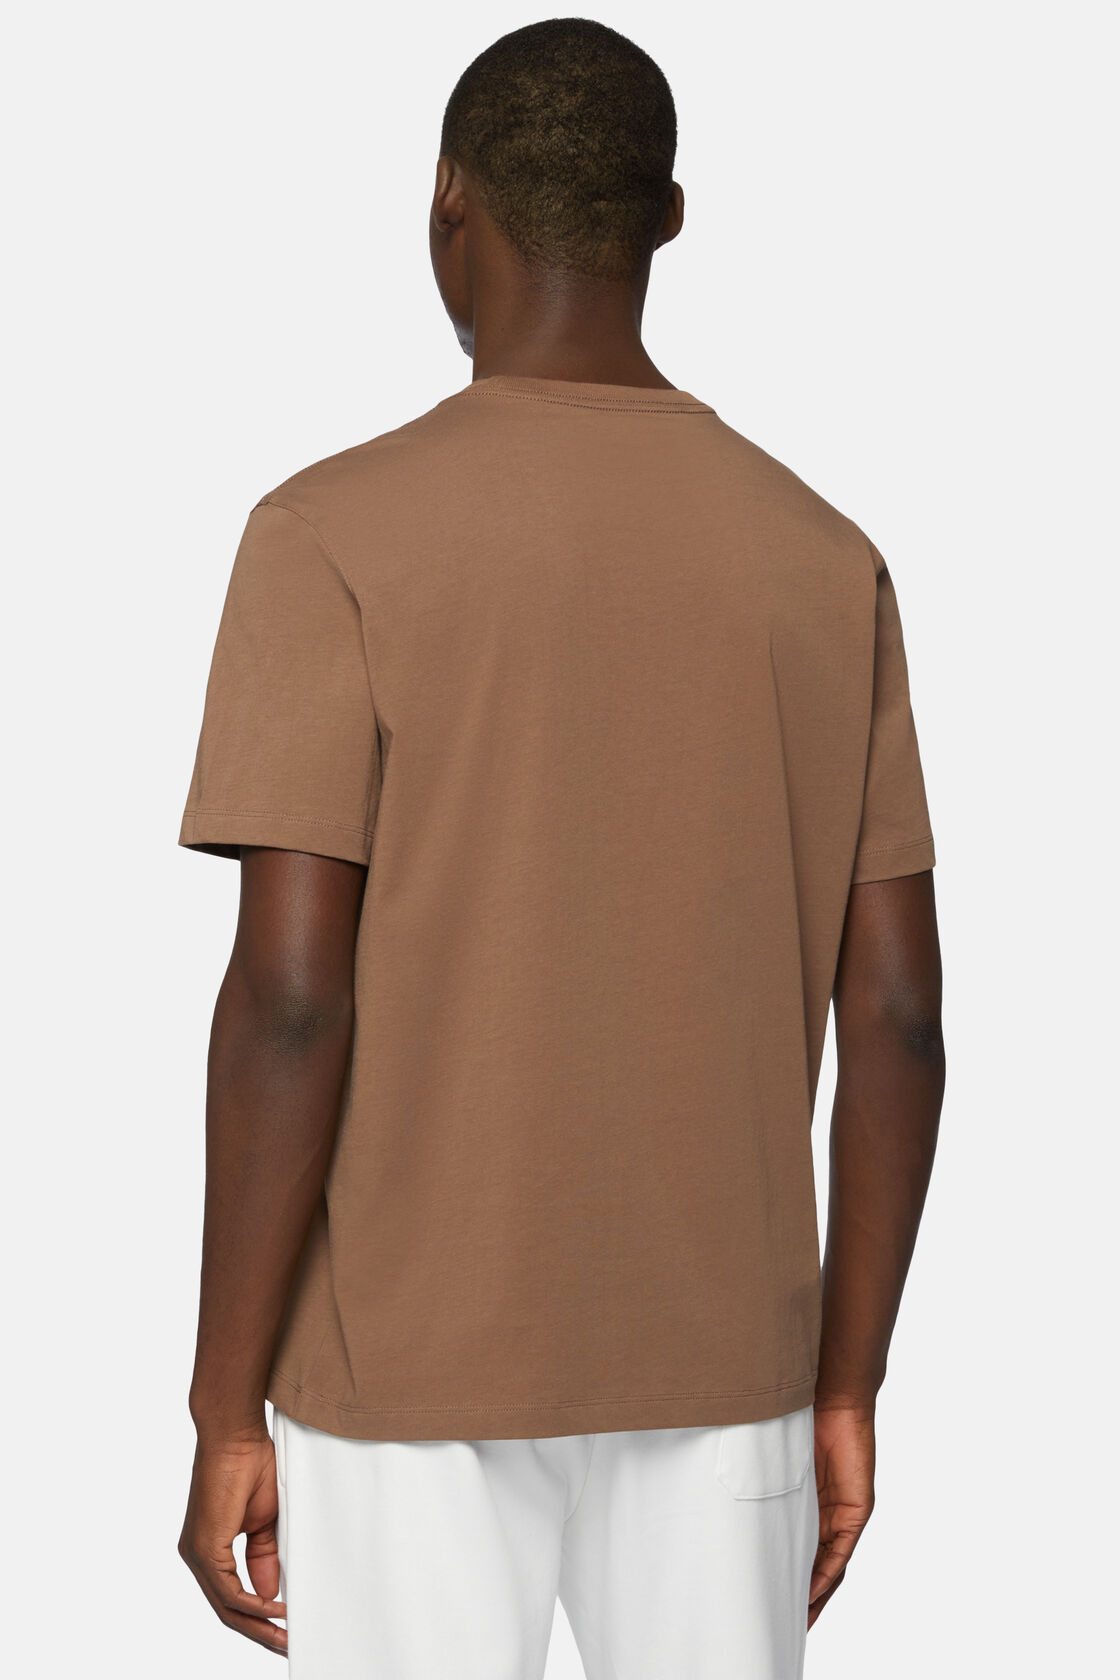 Camisetas de Algodón, marrón, hi-res